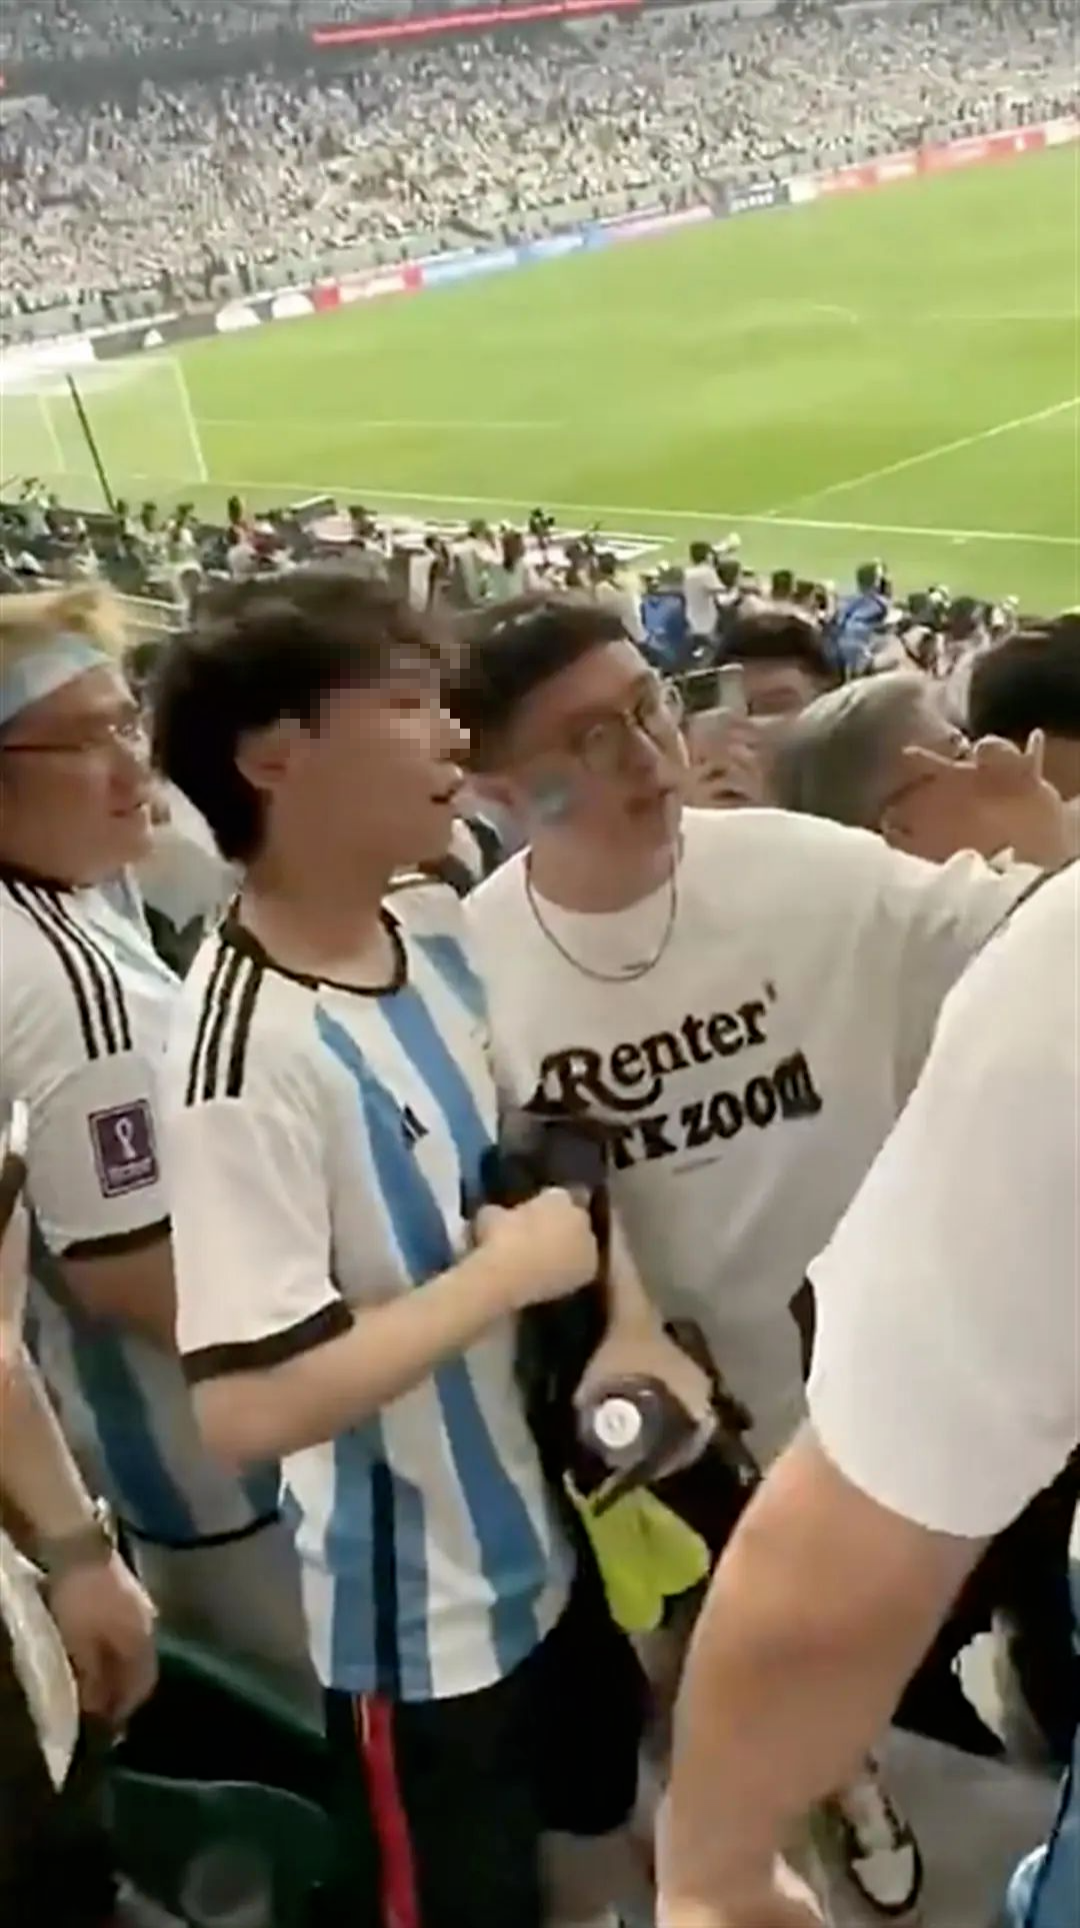 阿根廷门将:梅西带领着球队前进 但我们也必须帮他_PP视频体育频道